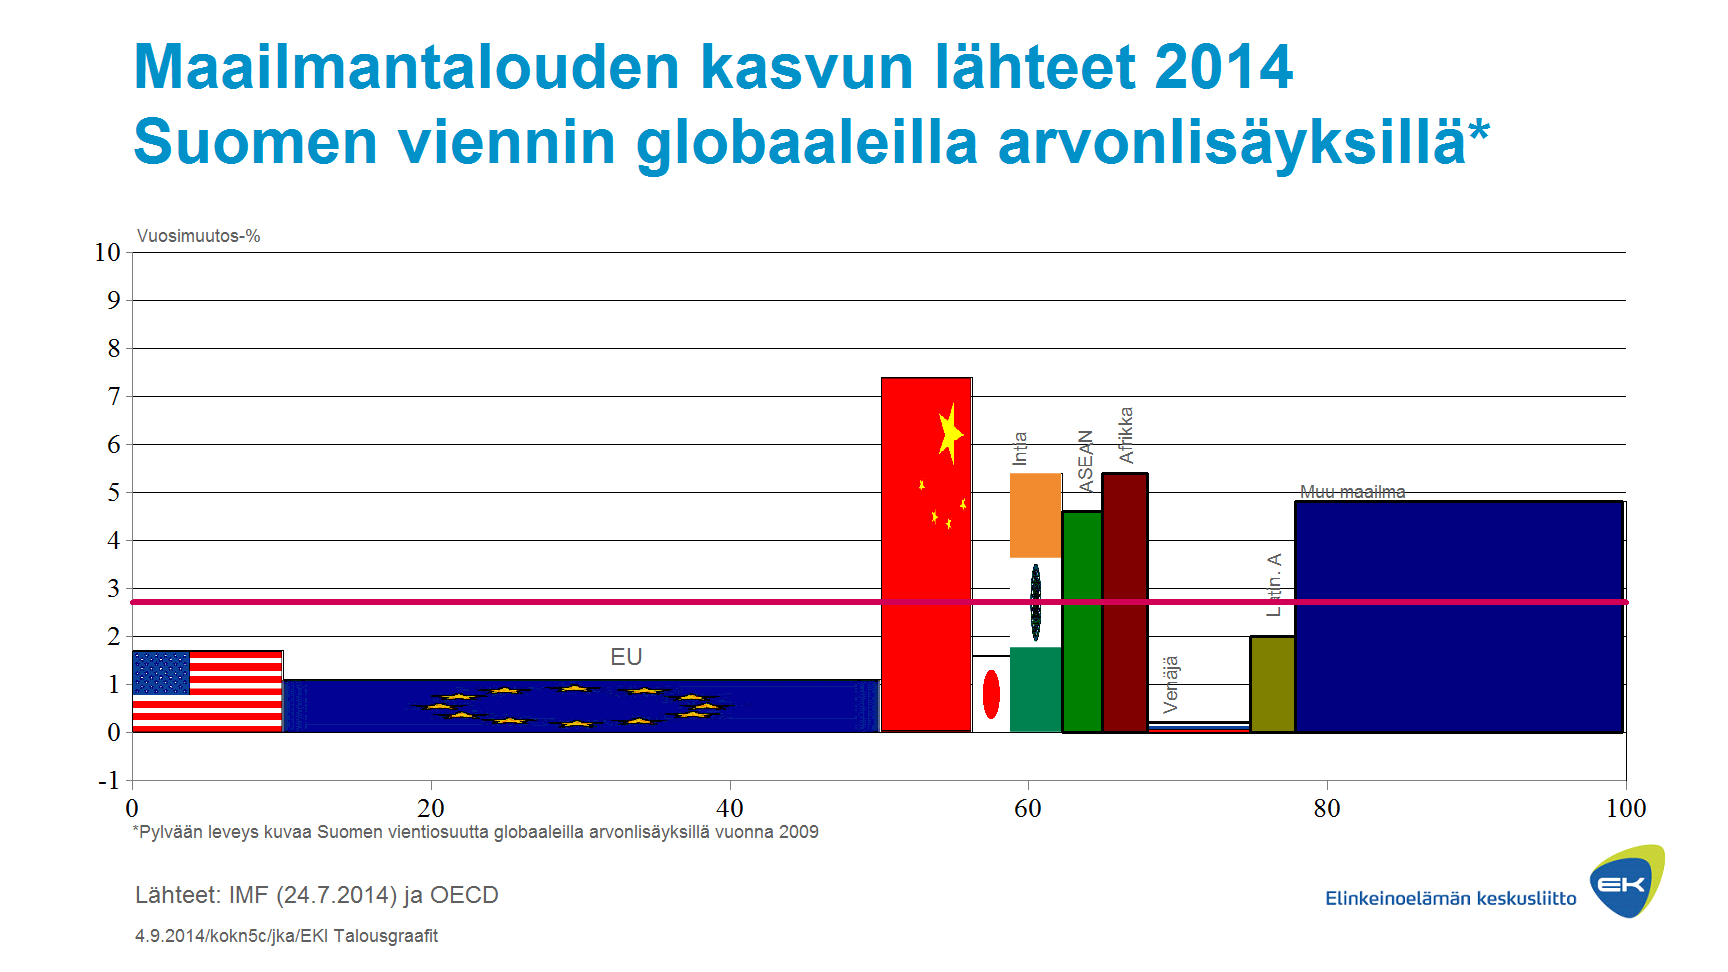 Maailmantalous Suomen kannalta 2015 maapainot suhteessa